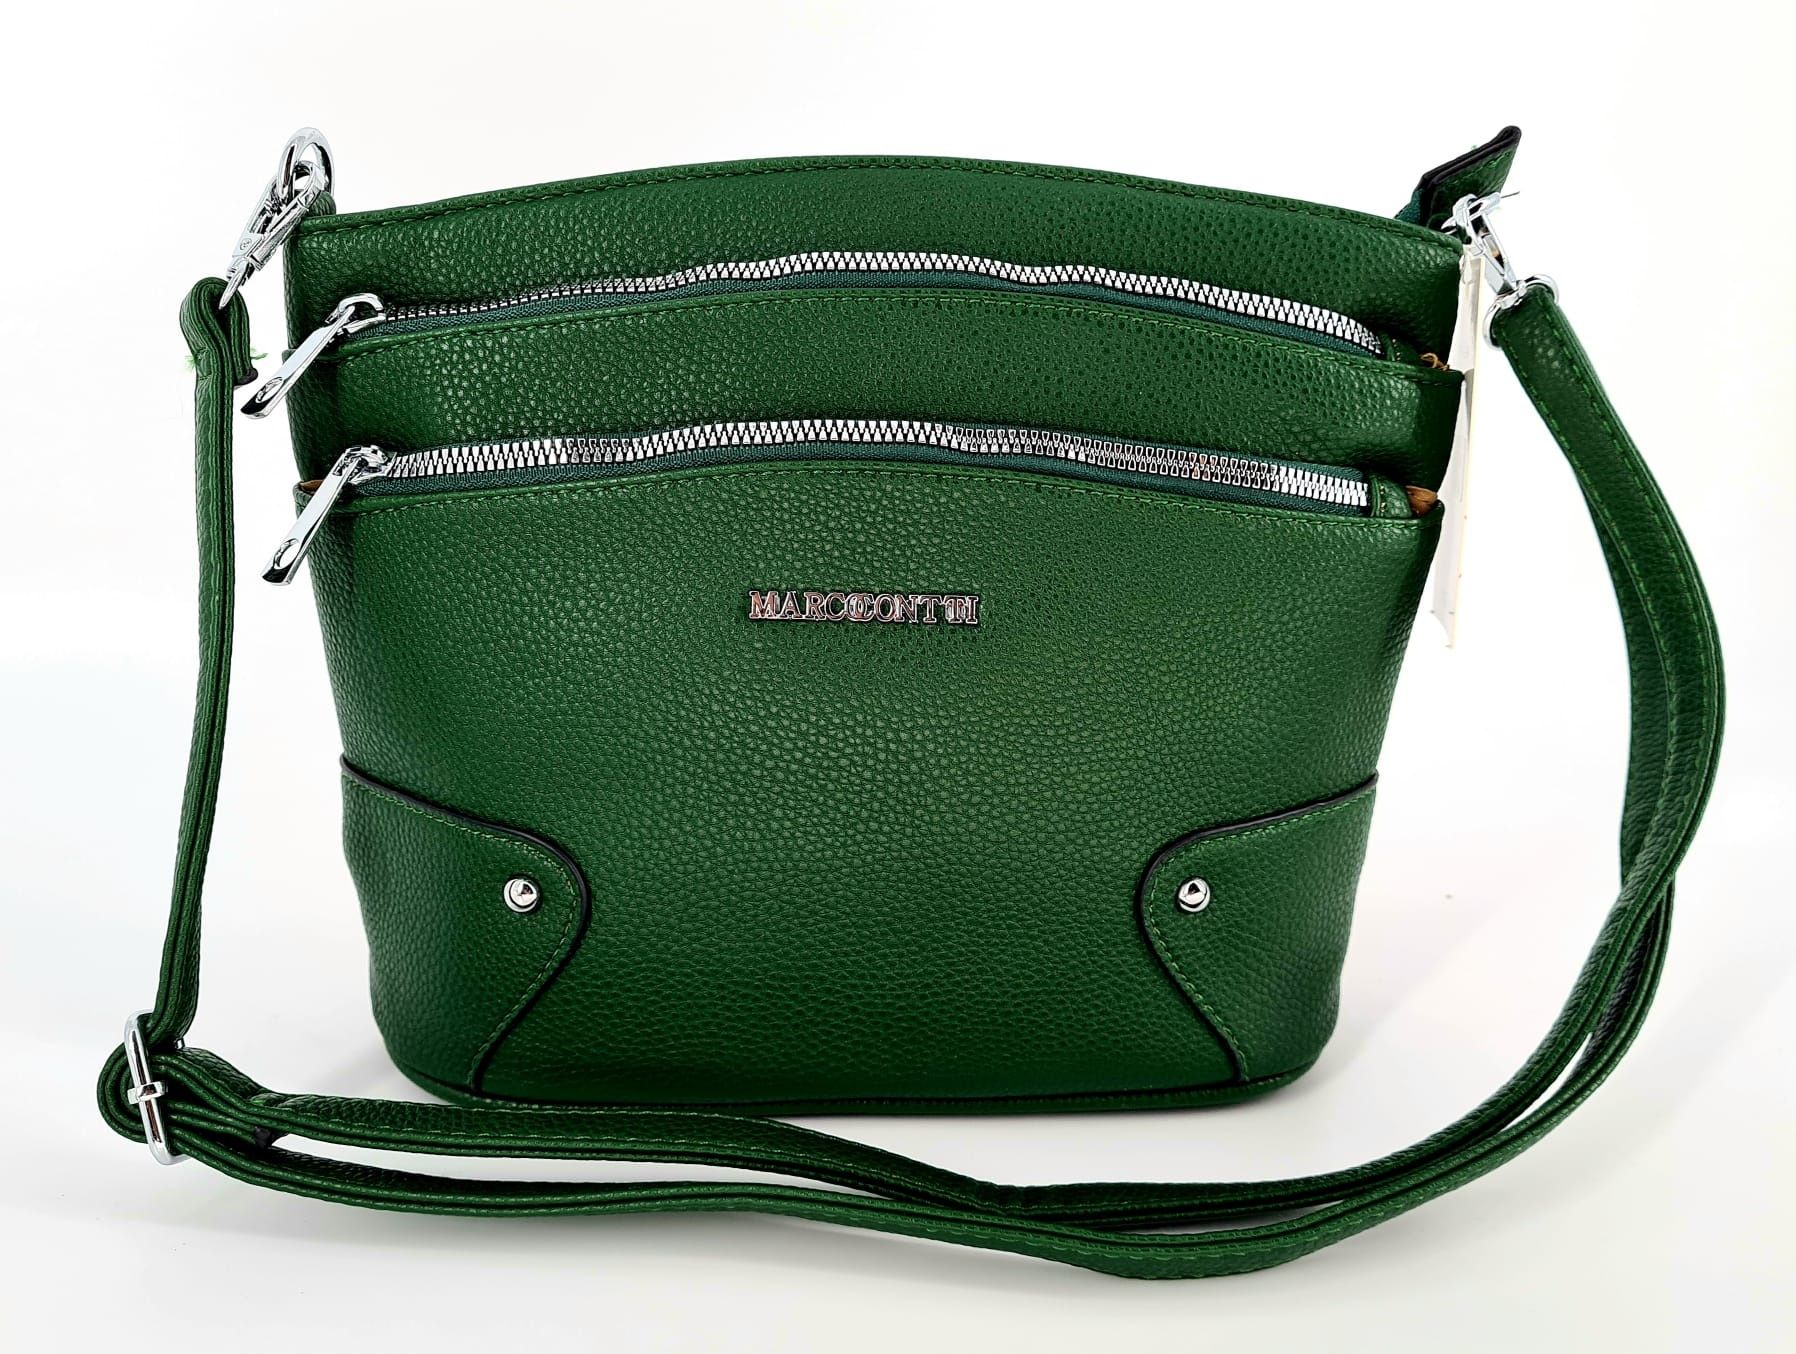 Nowa modna torebka na ramię marki Marco Contti zielona ciemna